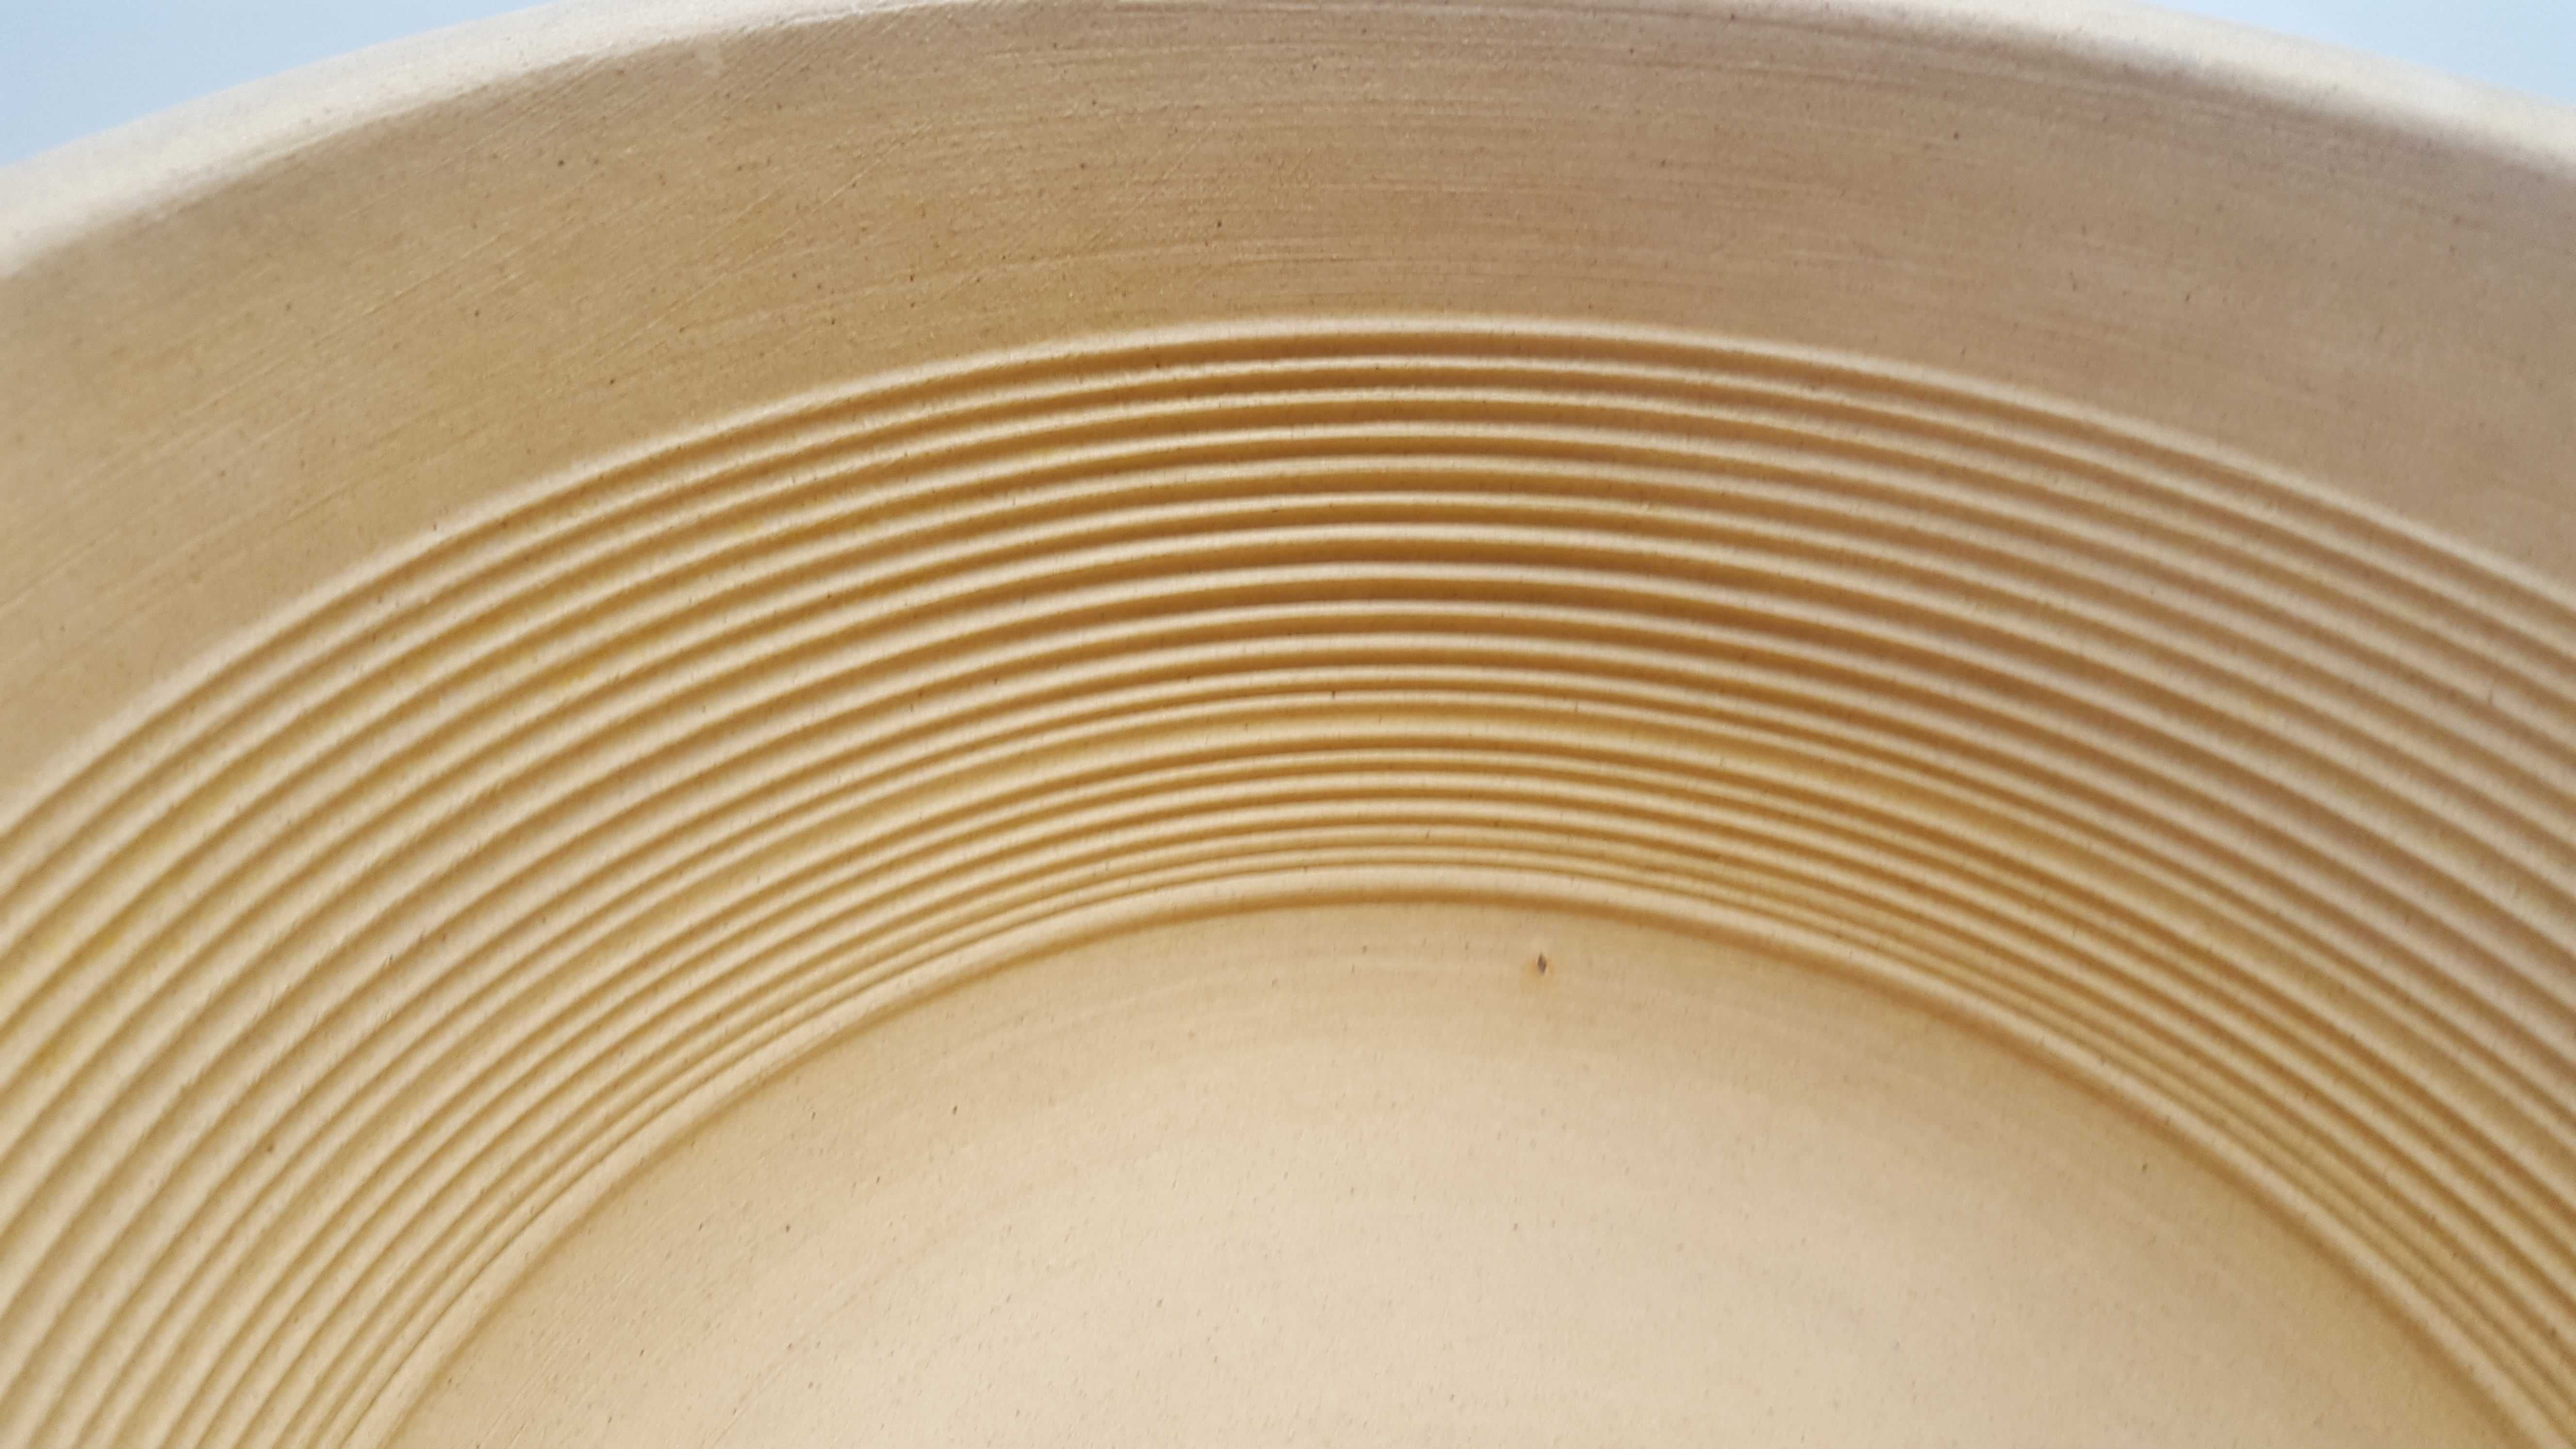 makutra ceramiczna jasne wnętrze wewnątrz 24cm -produkcja polska